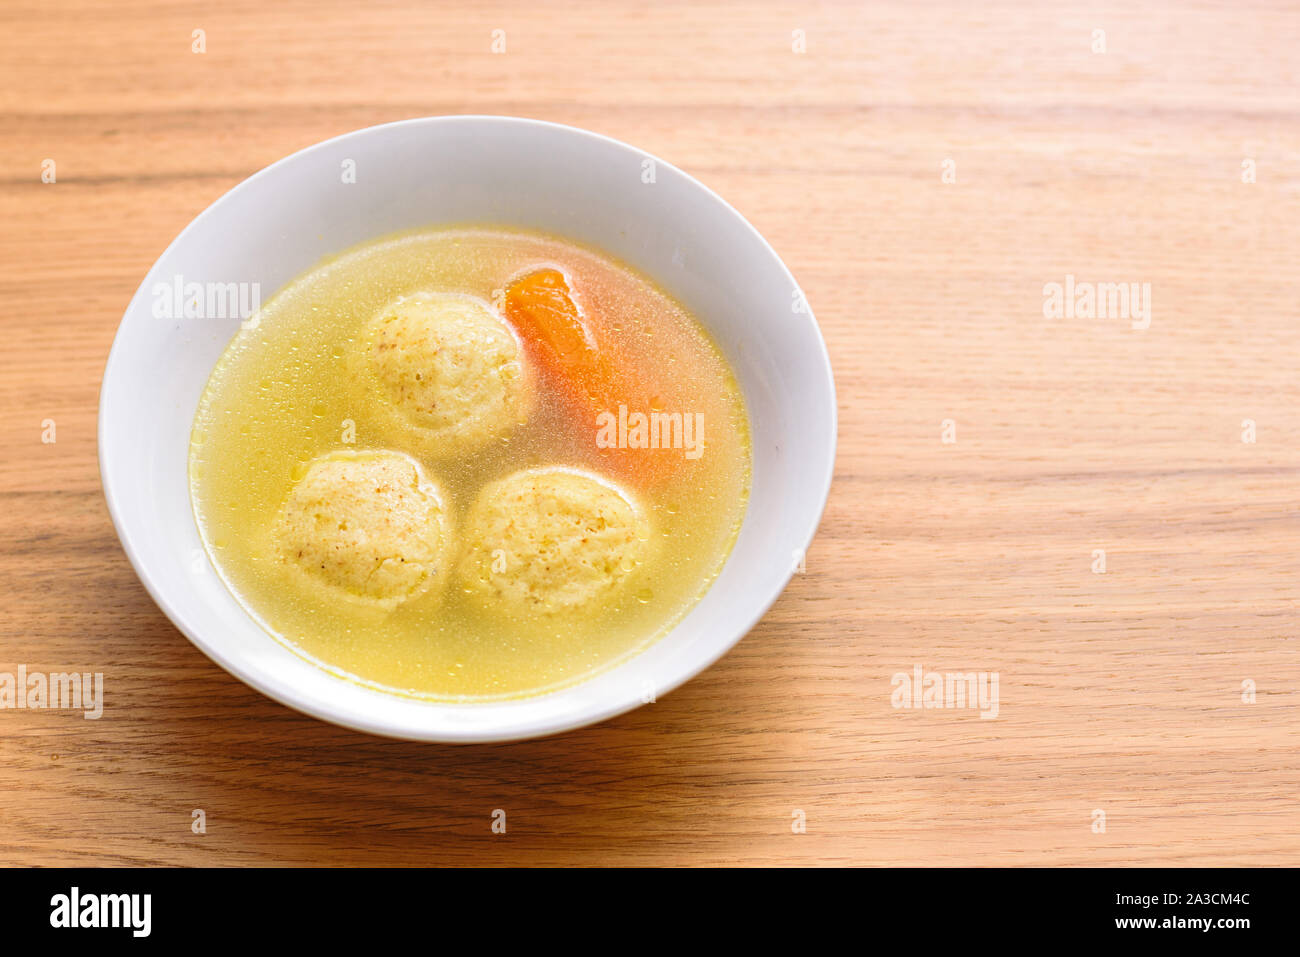 Balle kneidlach traditionnelle soupe matzoh.bol blanc avec d'authentiques matzo ball goût poulet soupe bouillon tradition alimentaire pour la Pâque juive et de tous les jours. Banque D'Images